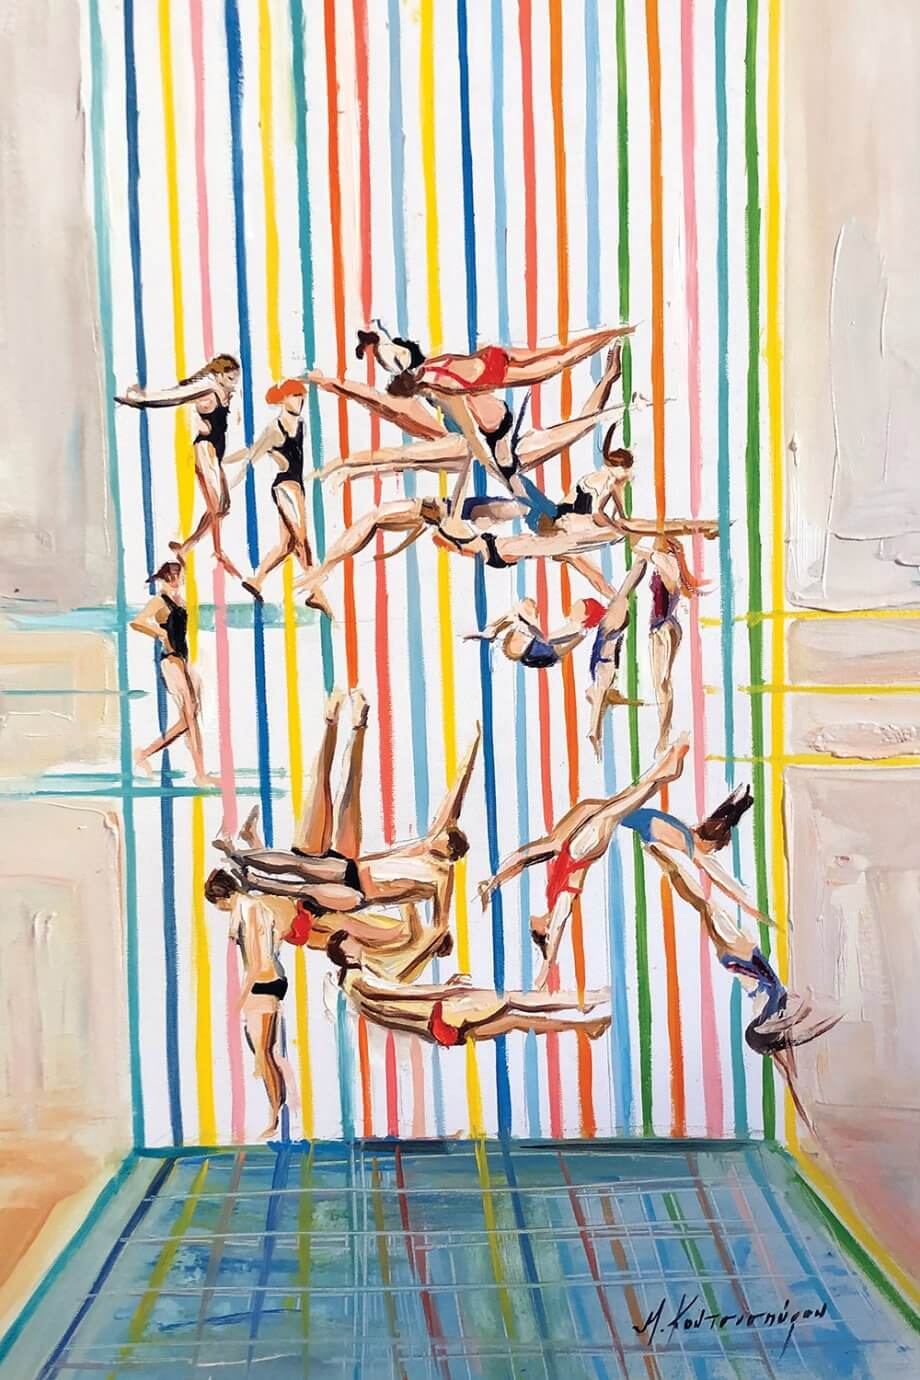 Marina Koutsospyrou painting - people floating